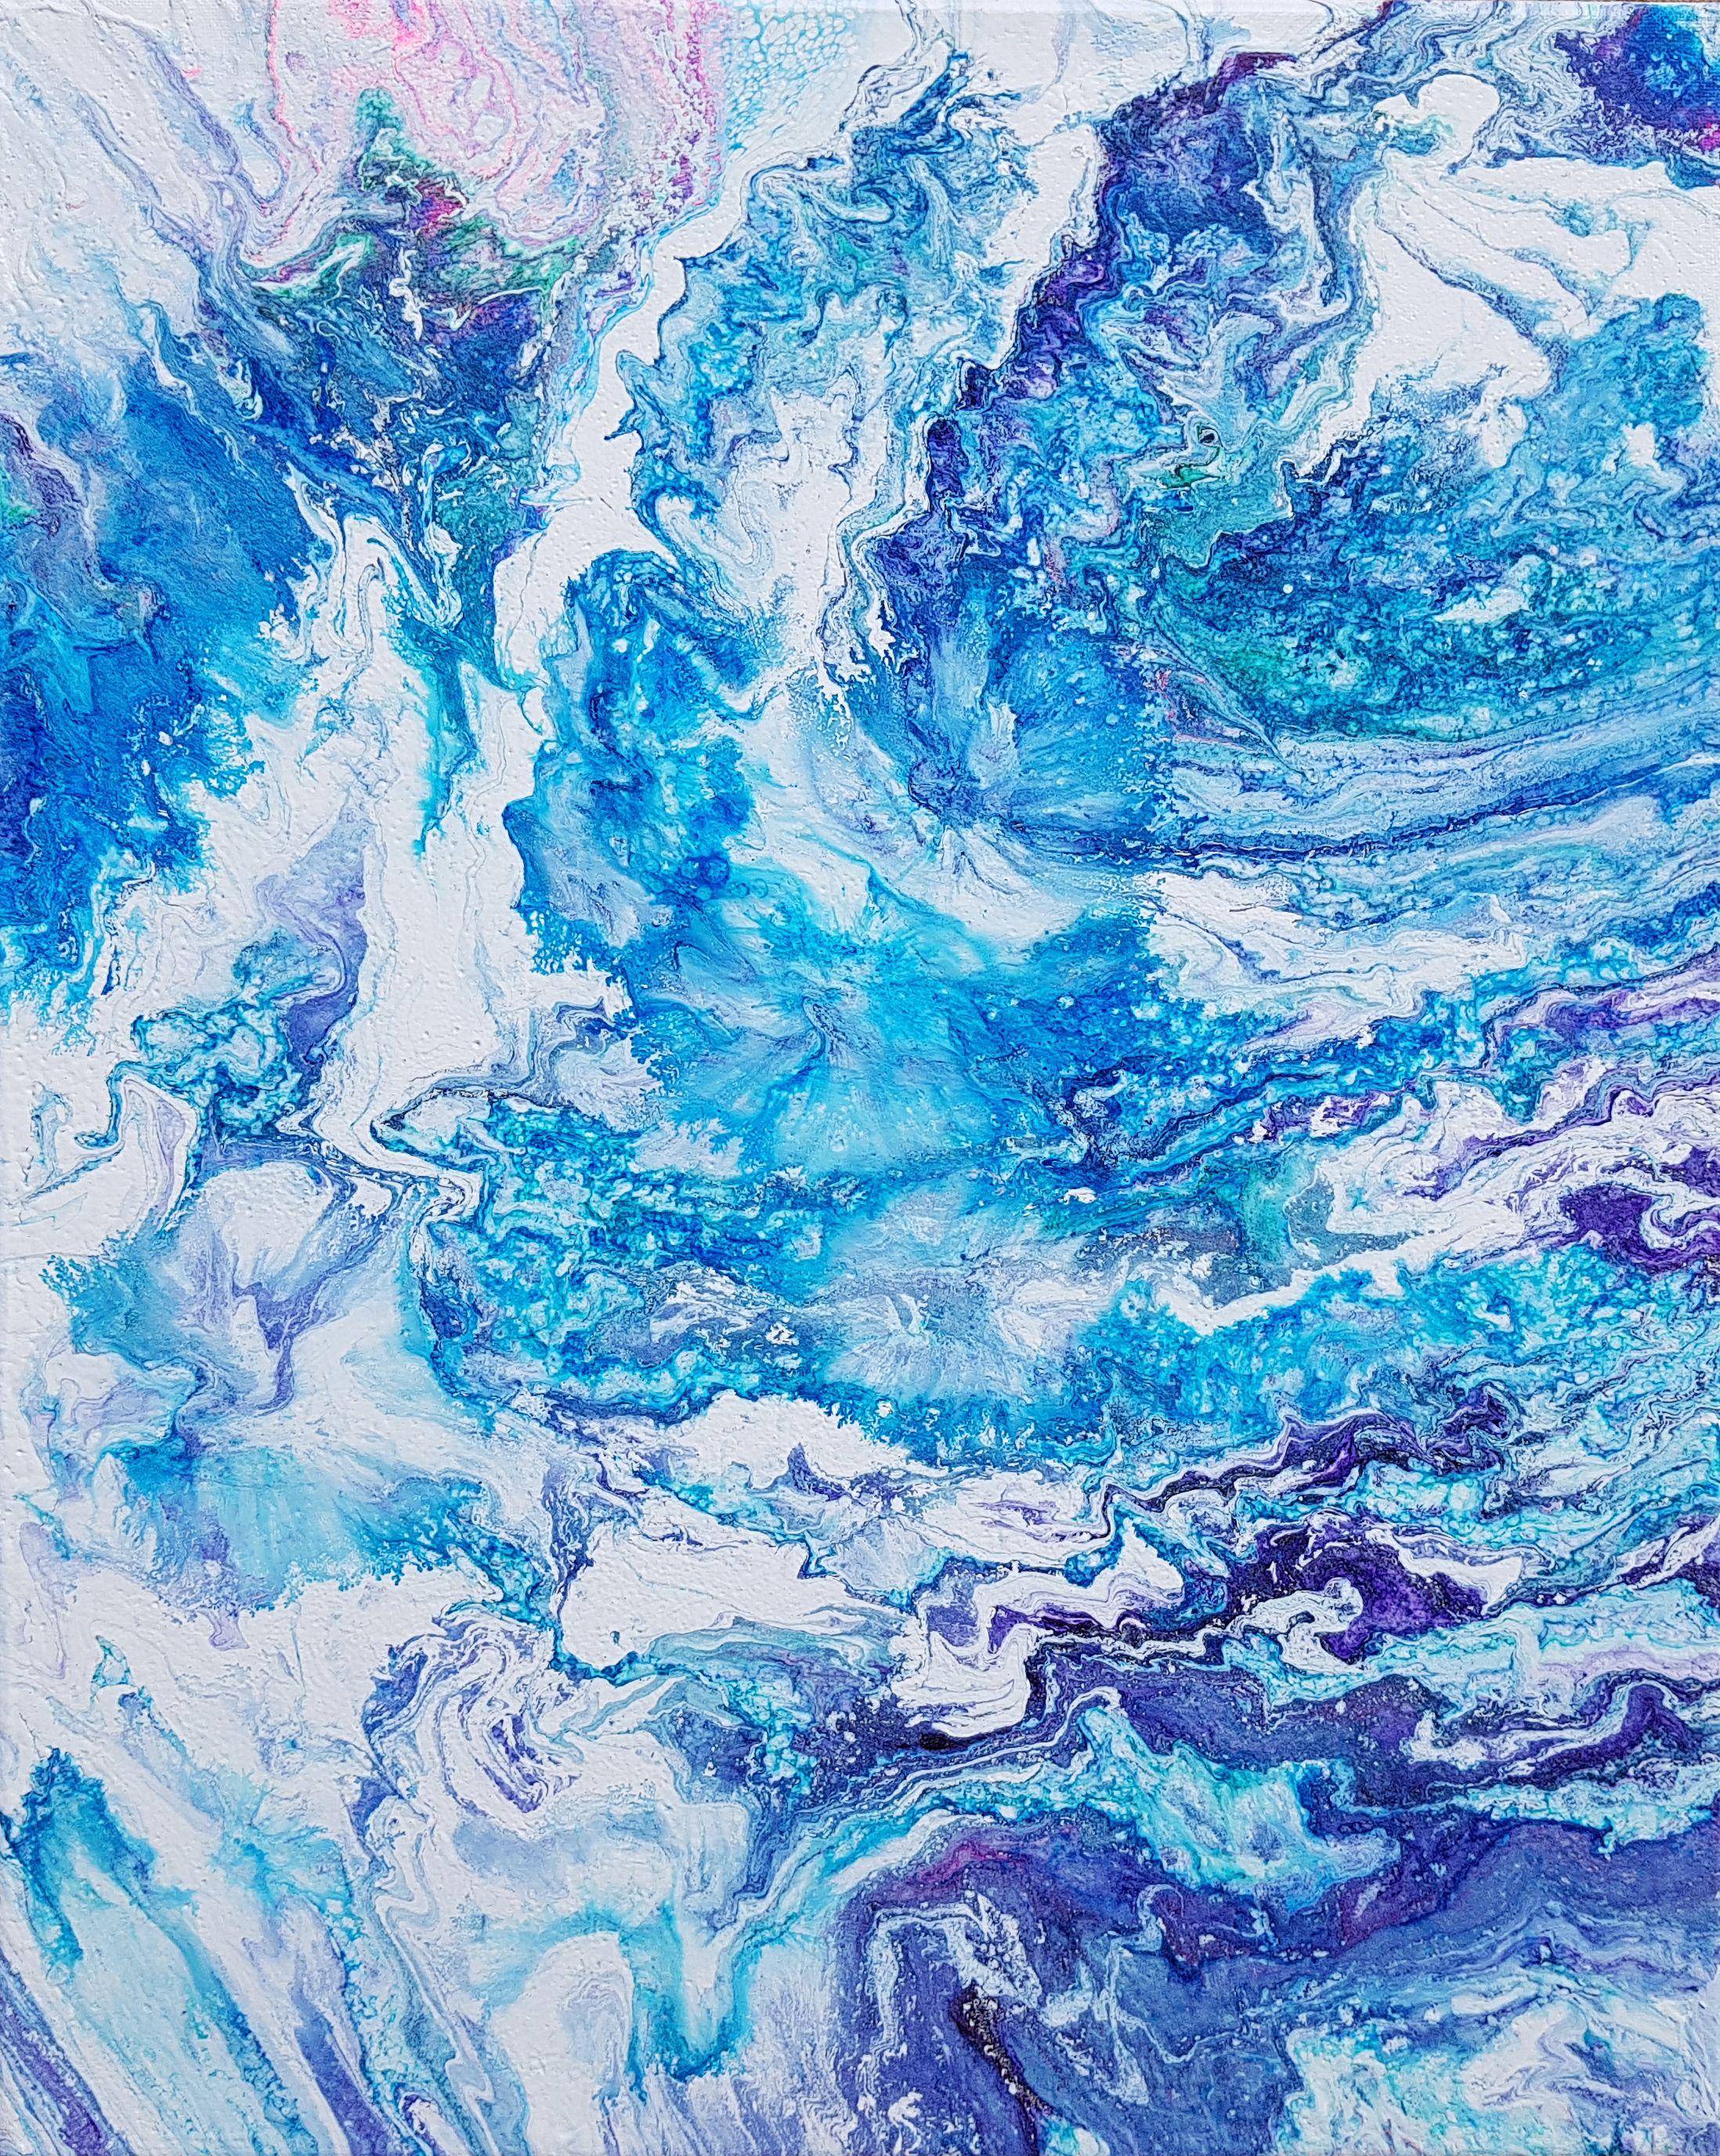 Celestial Waves ist ein originelles abstraktes expressionistisches Gemälde, das die himmlische, extraterrestrische Energie des Weltraums, die Himmelskörper und die himmlische Schönheit des Meeres einfangen soll.     Titel: Celestial Waves  Medium: